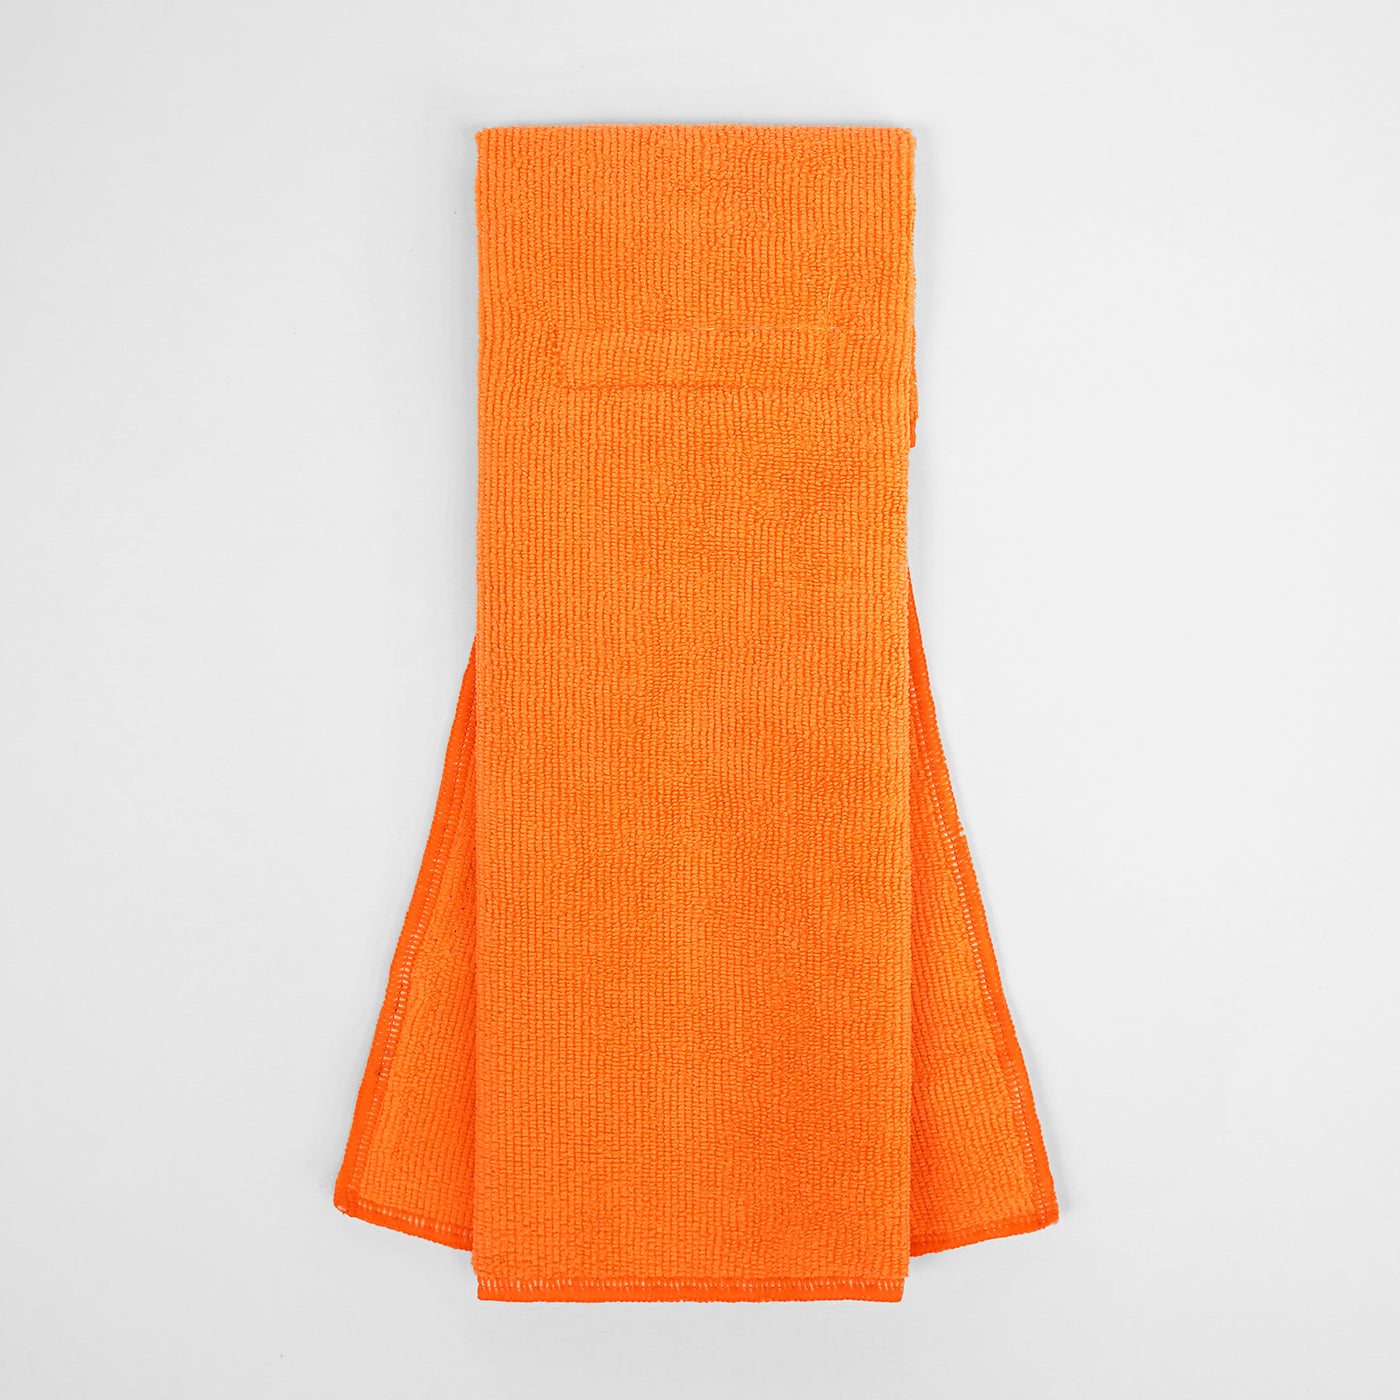 Hue Orange Football Towel